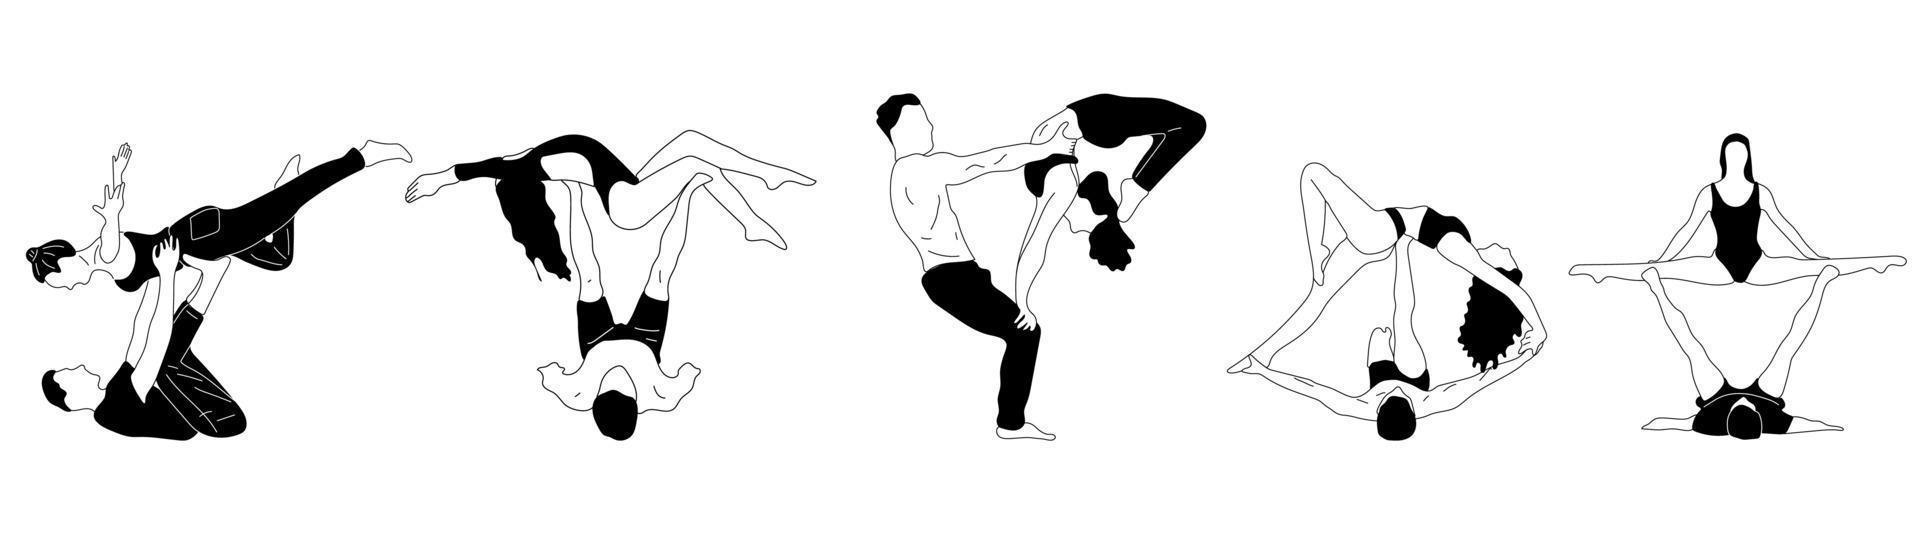 reeks van paar mensen aan het doen yoga illustratie. yoga asana's voor paar yoga.hand getrokken schetsen vector